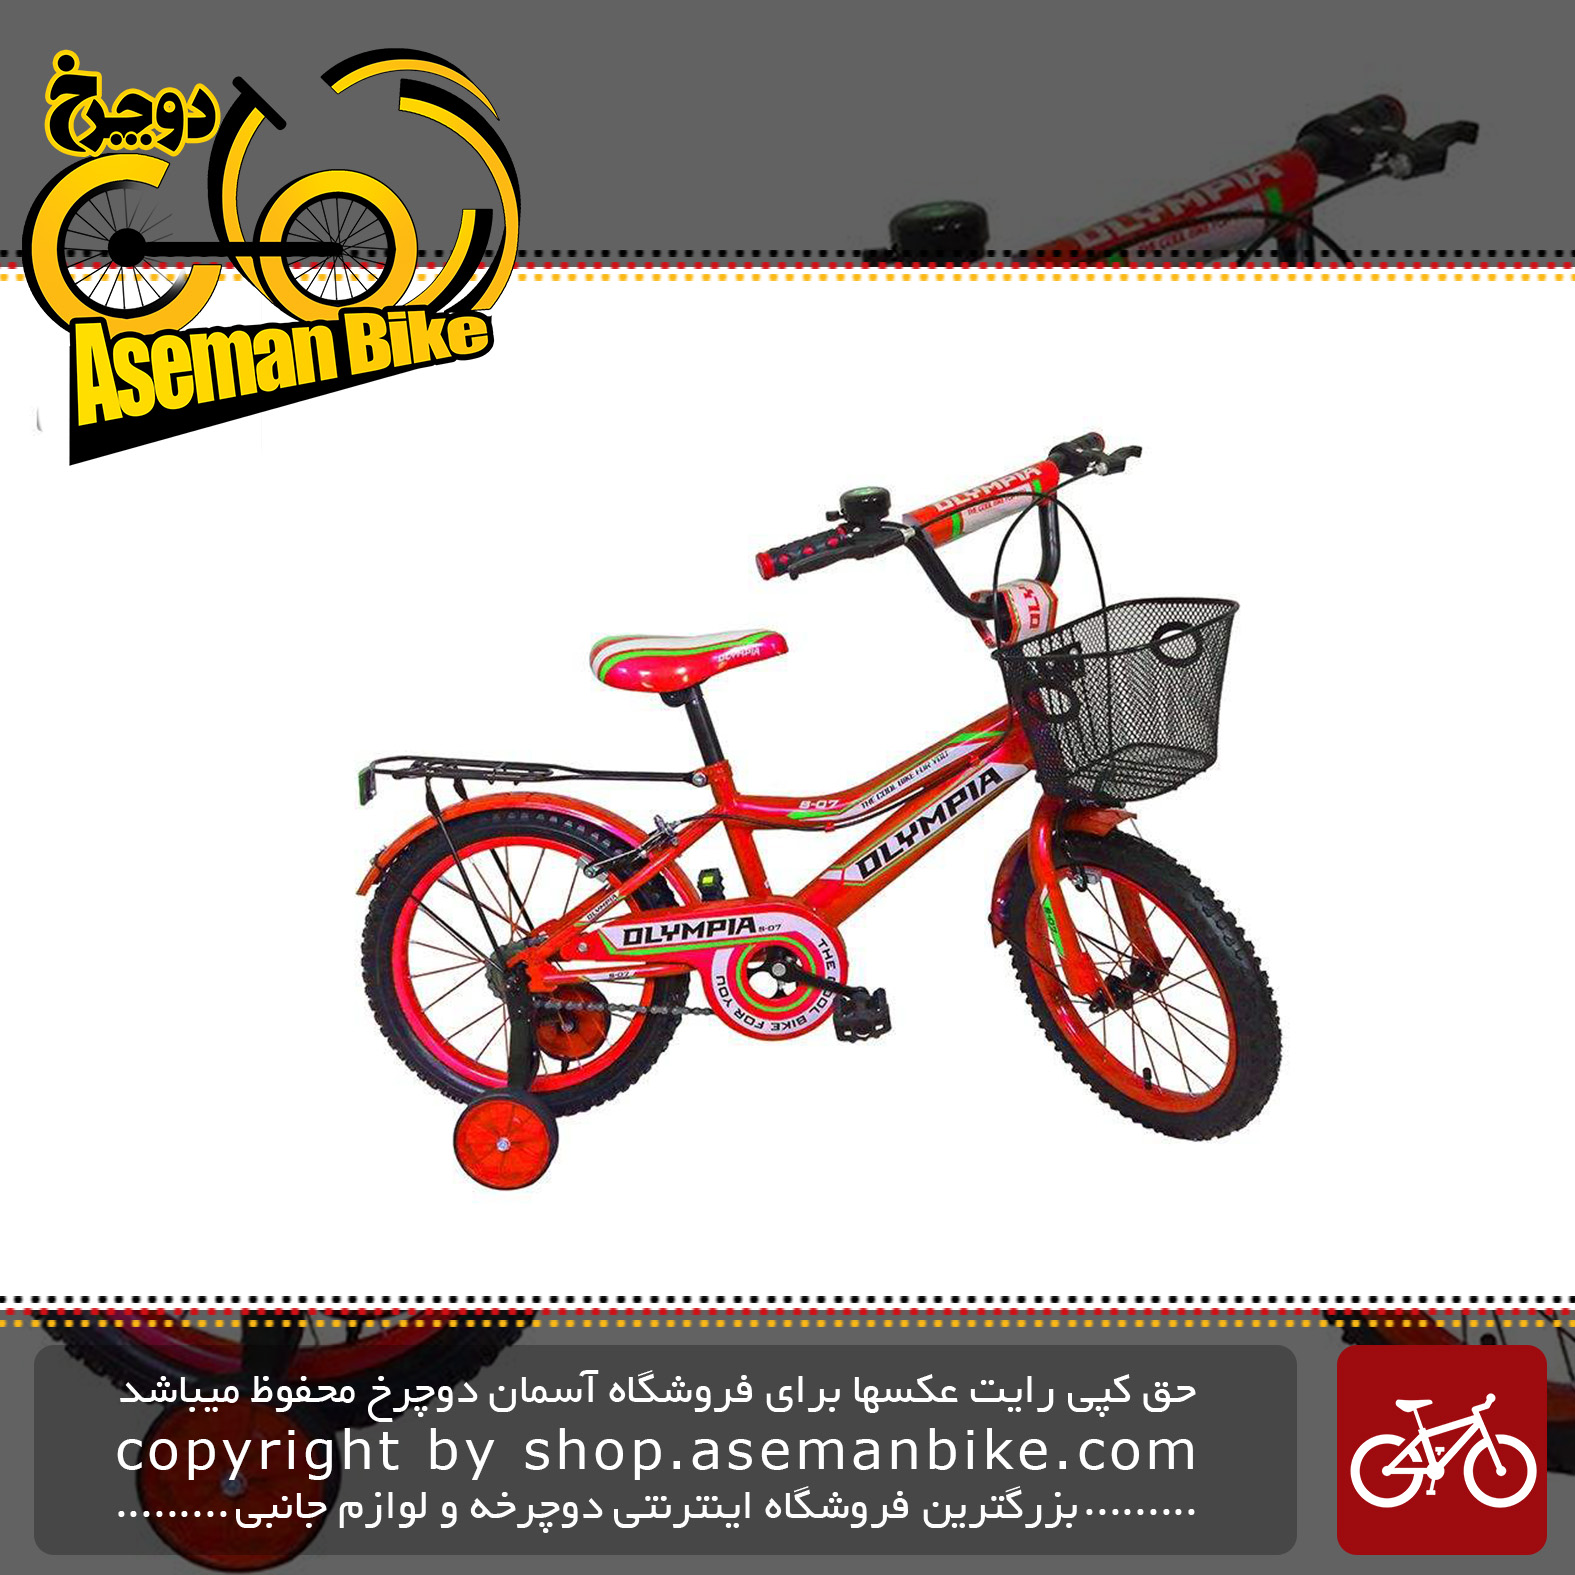 دوچرخه سواری بچه گانه المپیا مدل 1620 سایز 16 Olympia 1620 Baby Bike Size 16